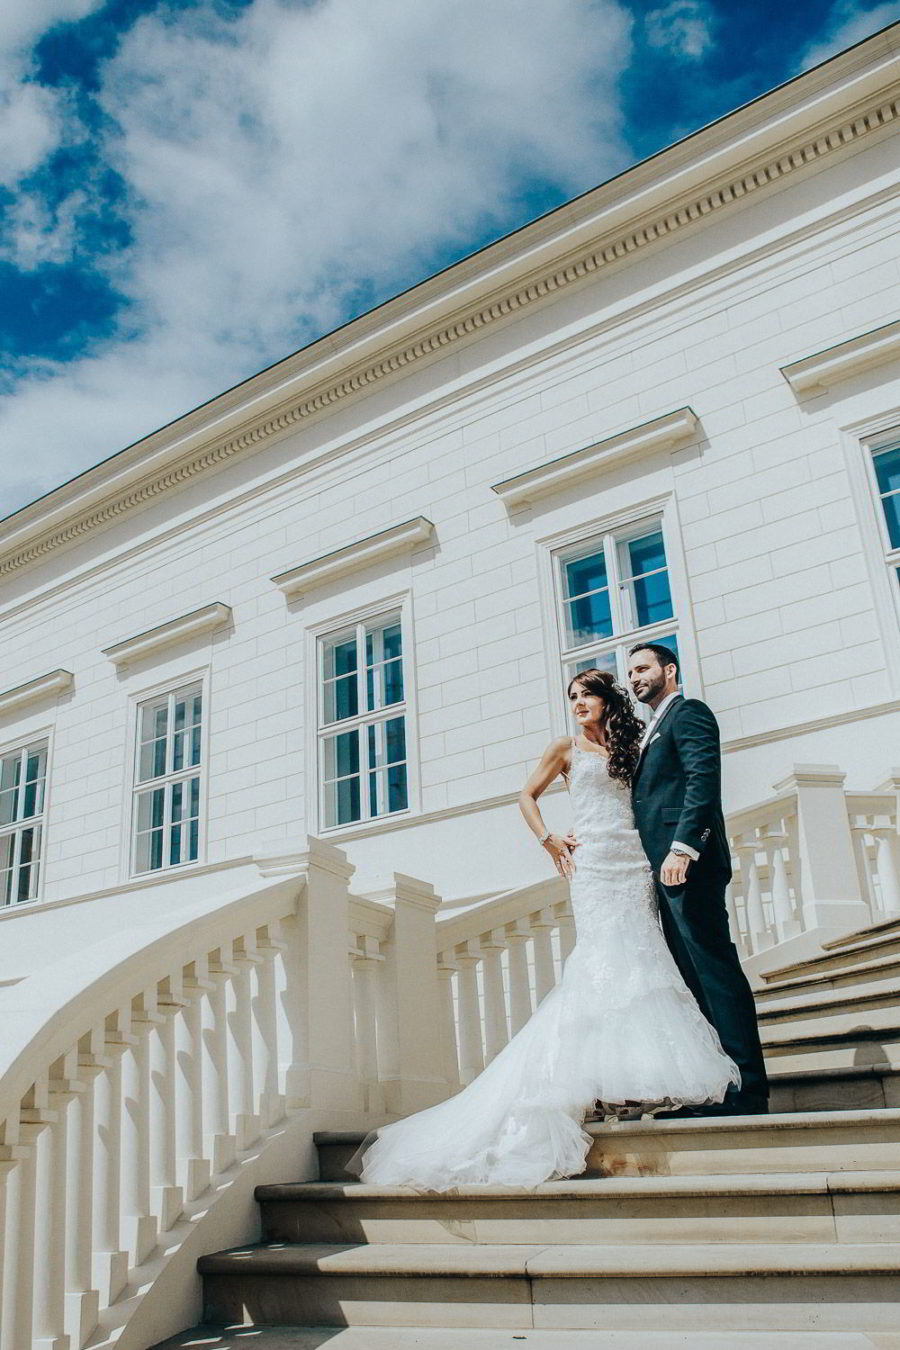 Brautpaar in Herrenhäuser Gärten in Hannover